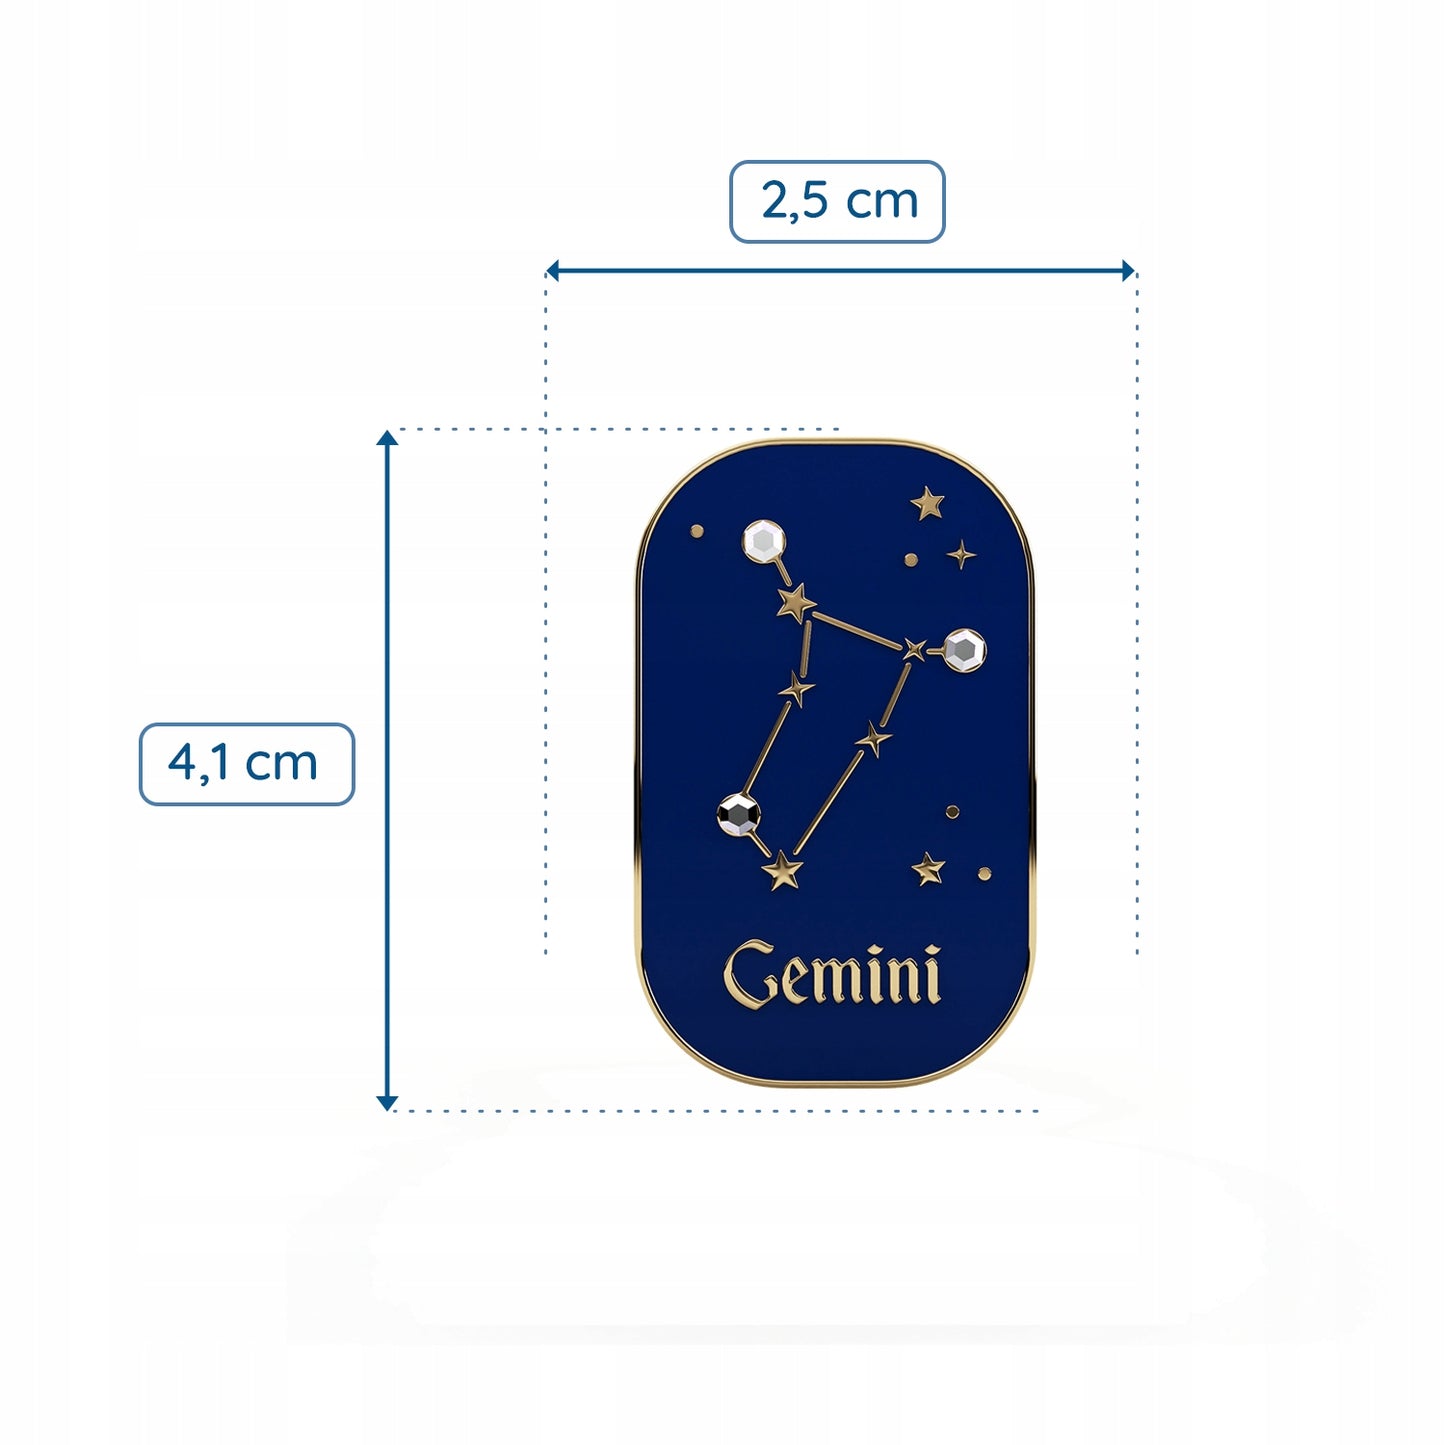 Znak zodiaku Bliźnięta (Gemini) - przypinka z cyrkoniami wykończona 14K złotem